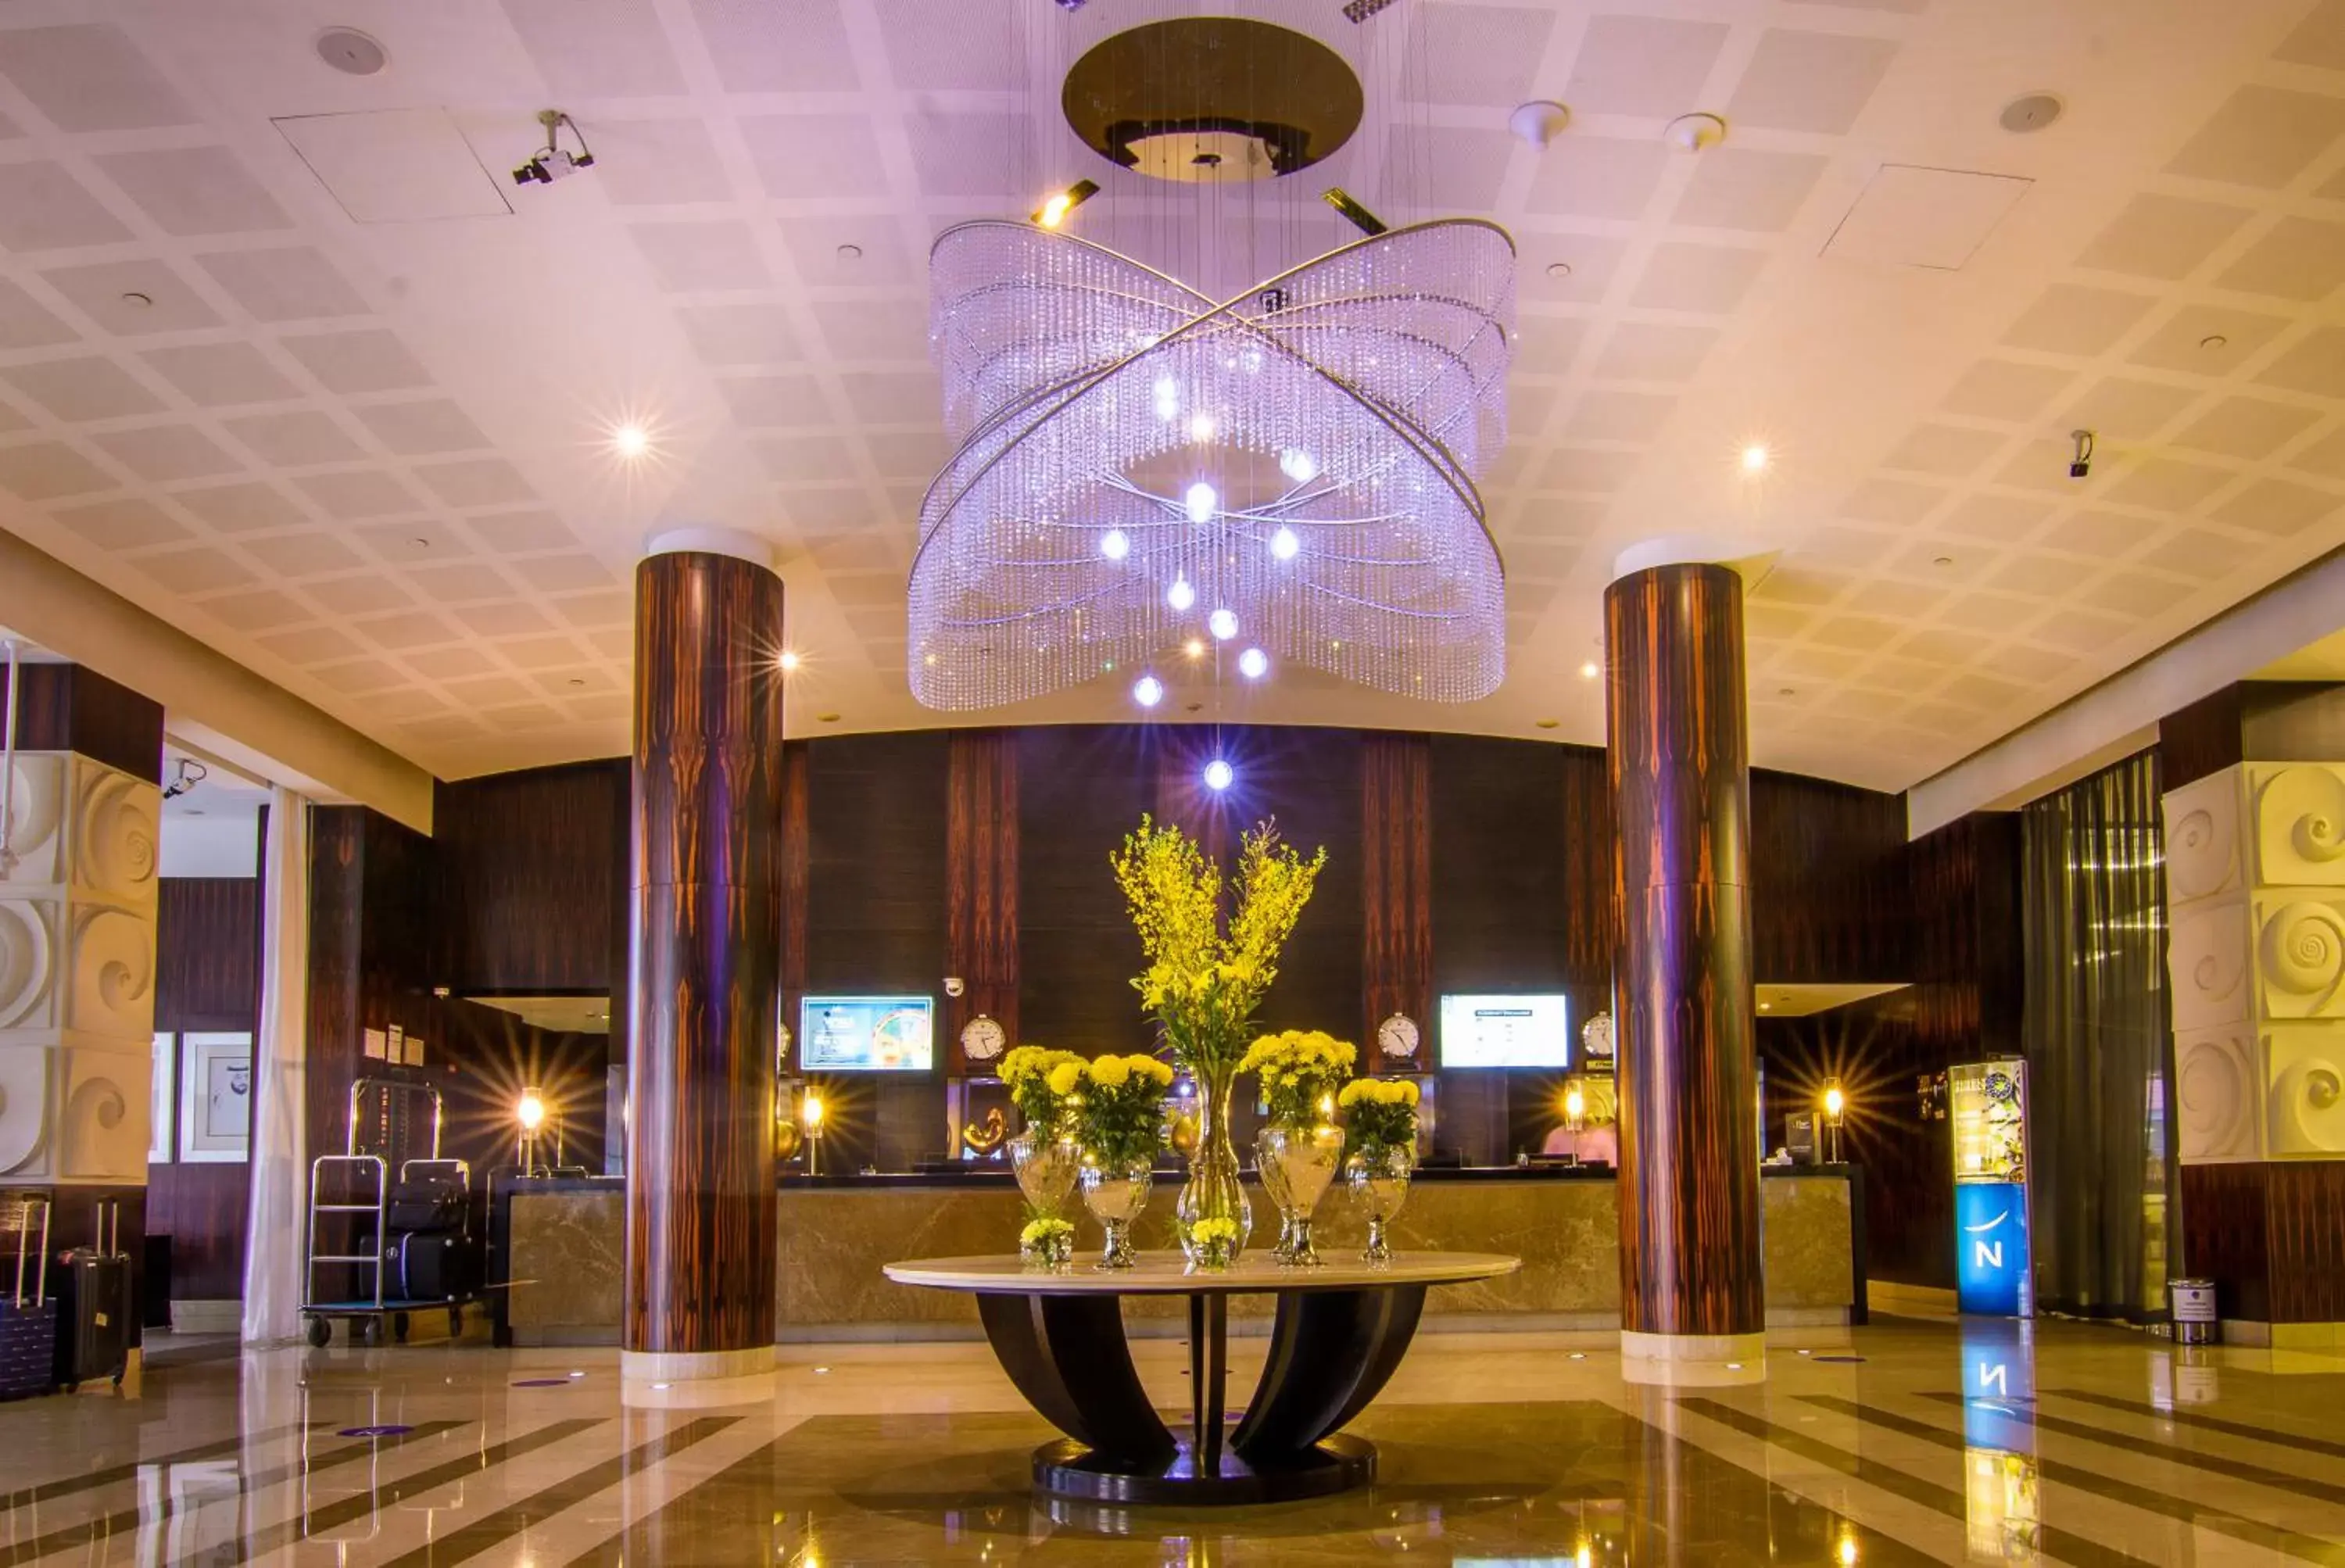 Lobby or reception in Novotel World Trade Centre Dubai